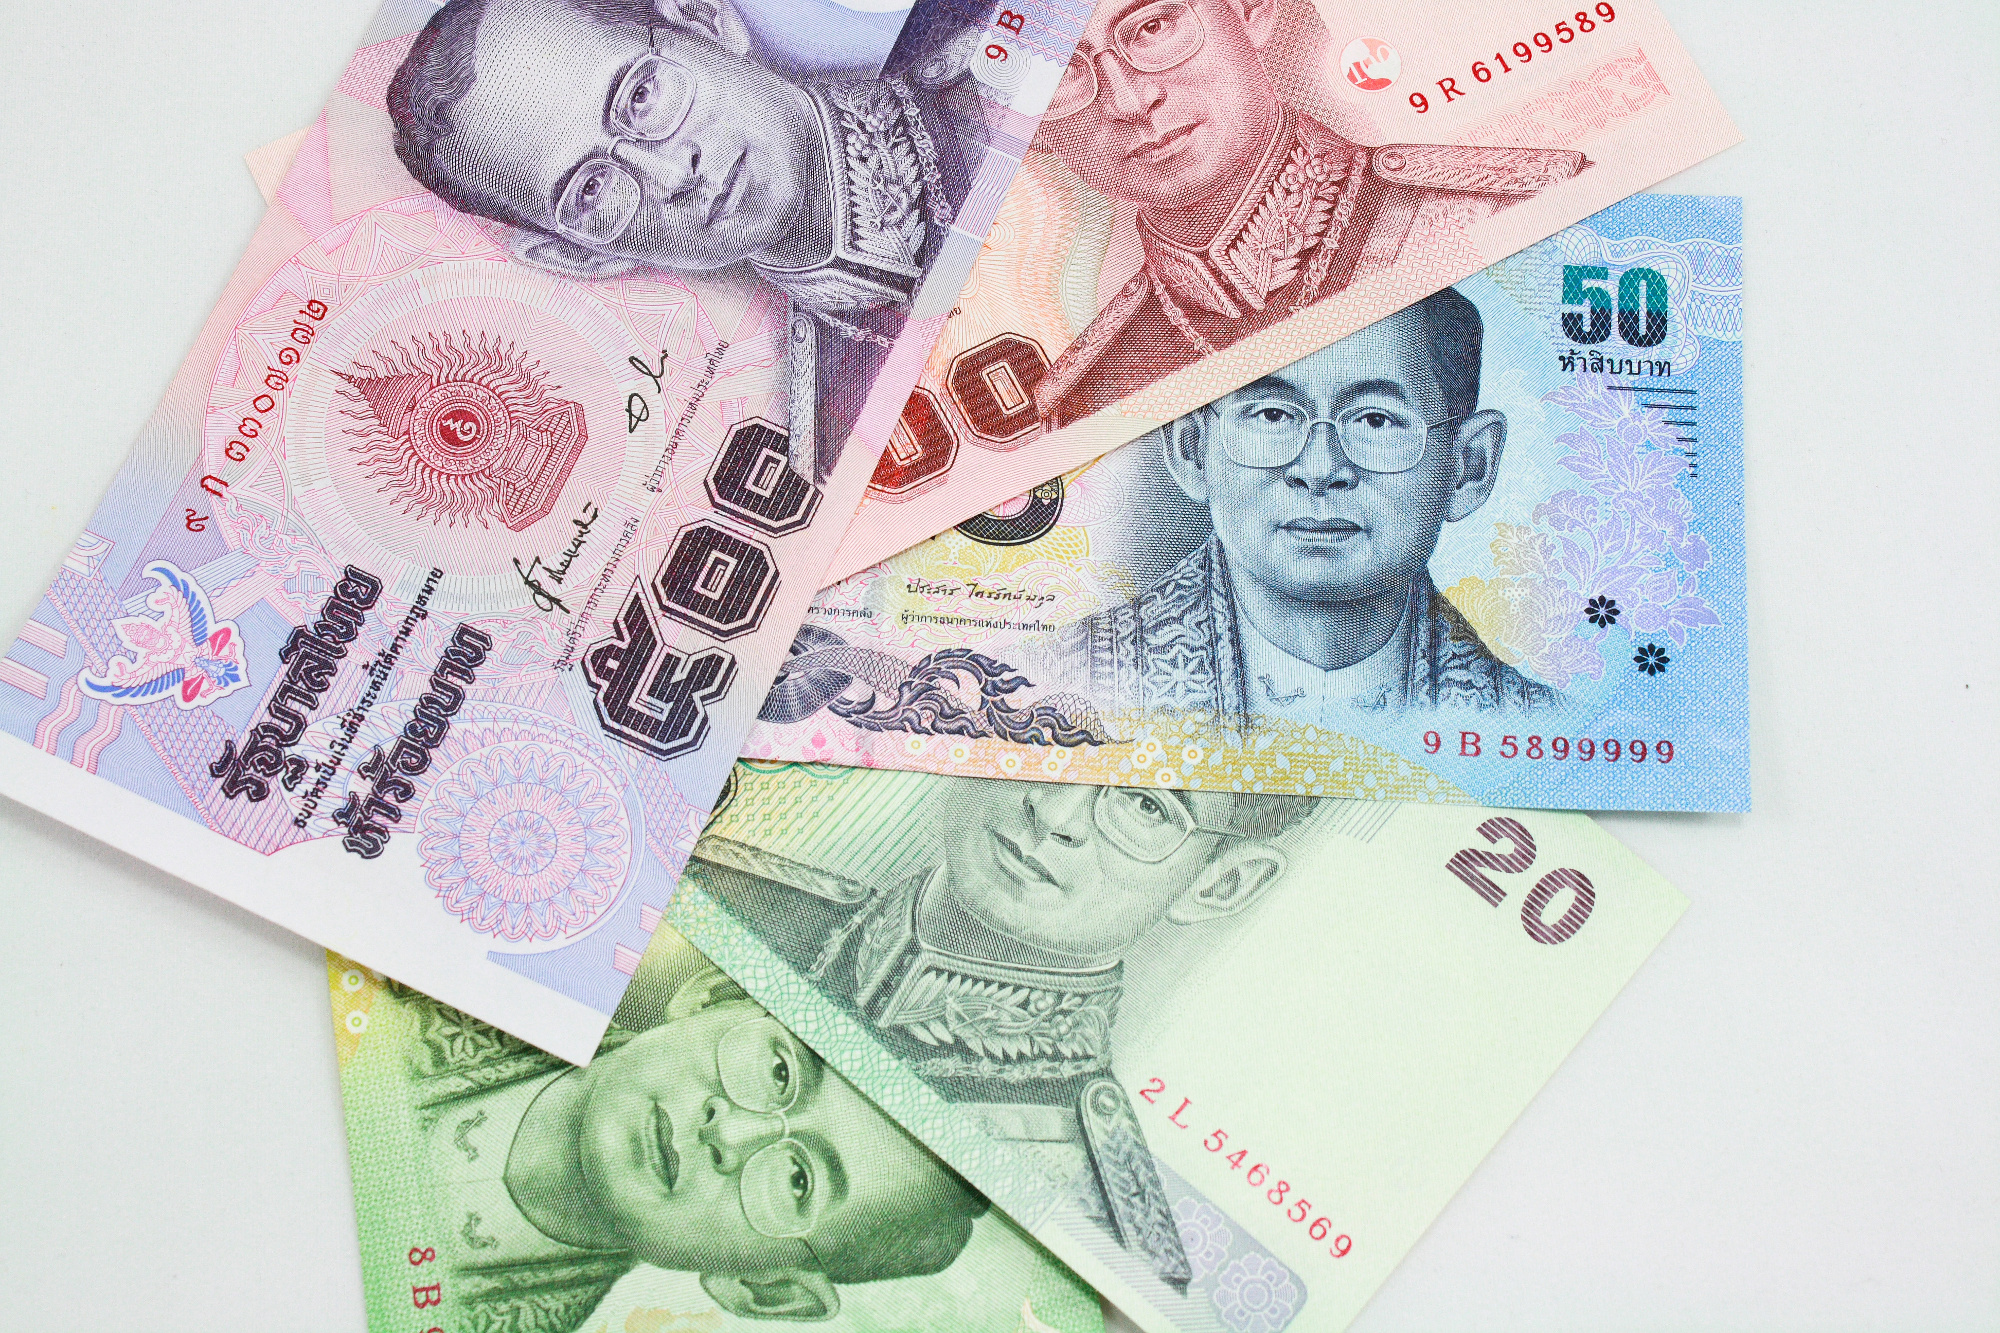 Monnaie thaï